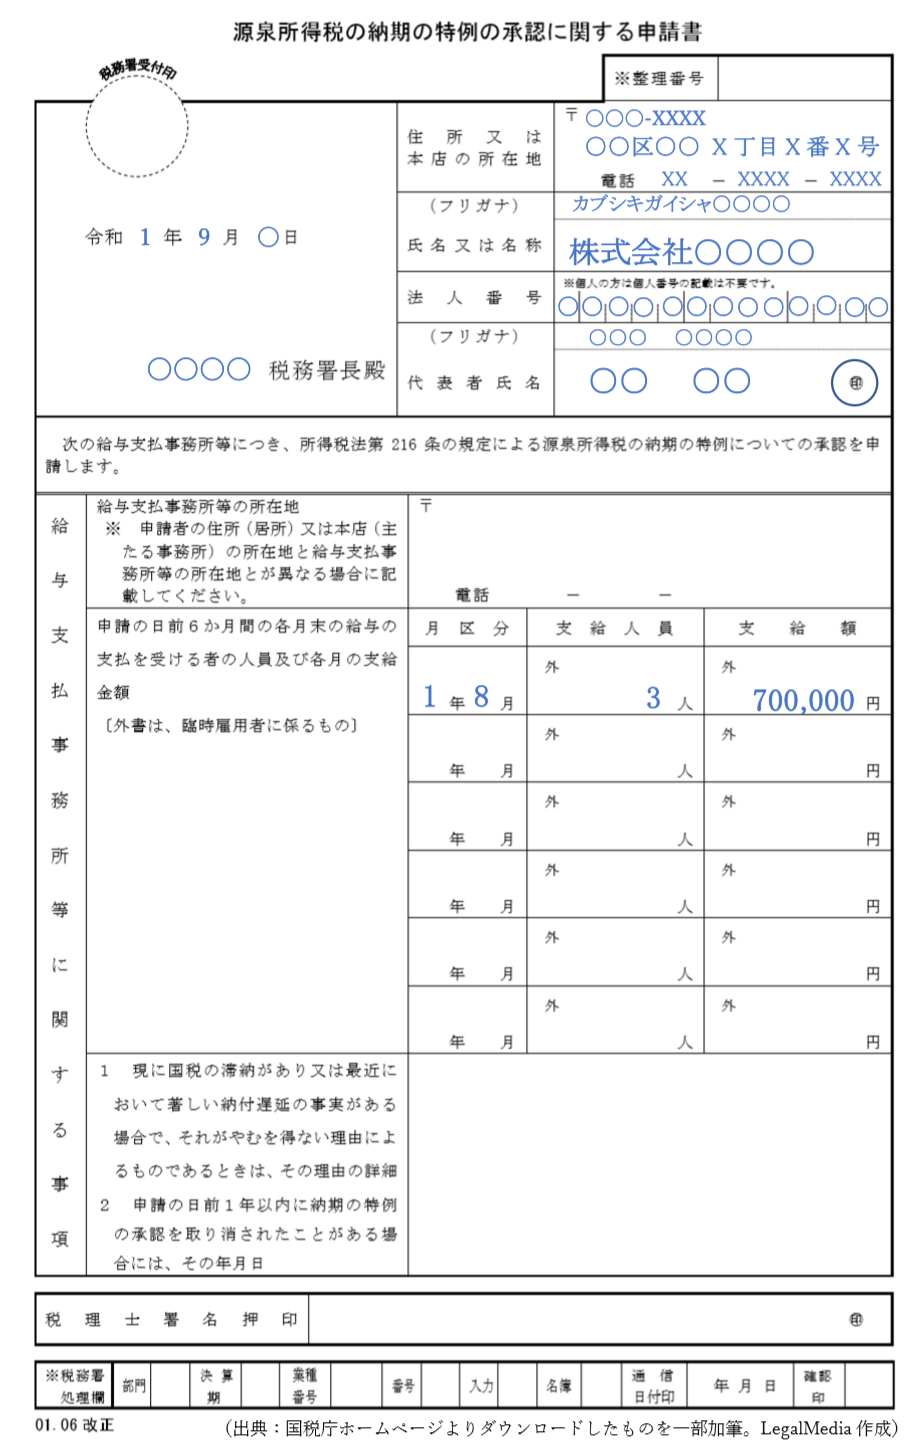 源泉所得税の納期の特例の承認に関する申請書の記入例